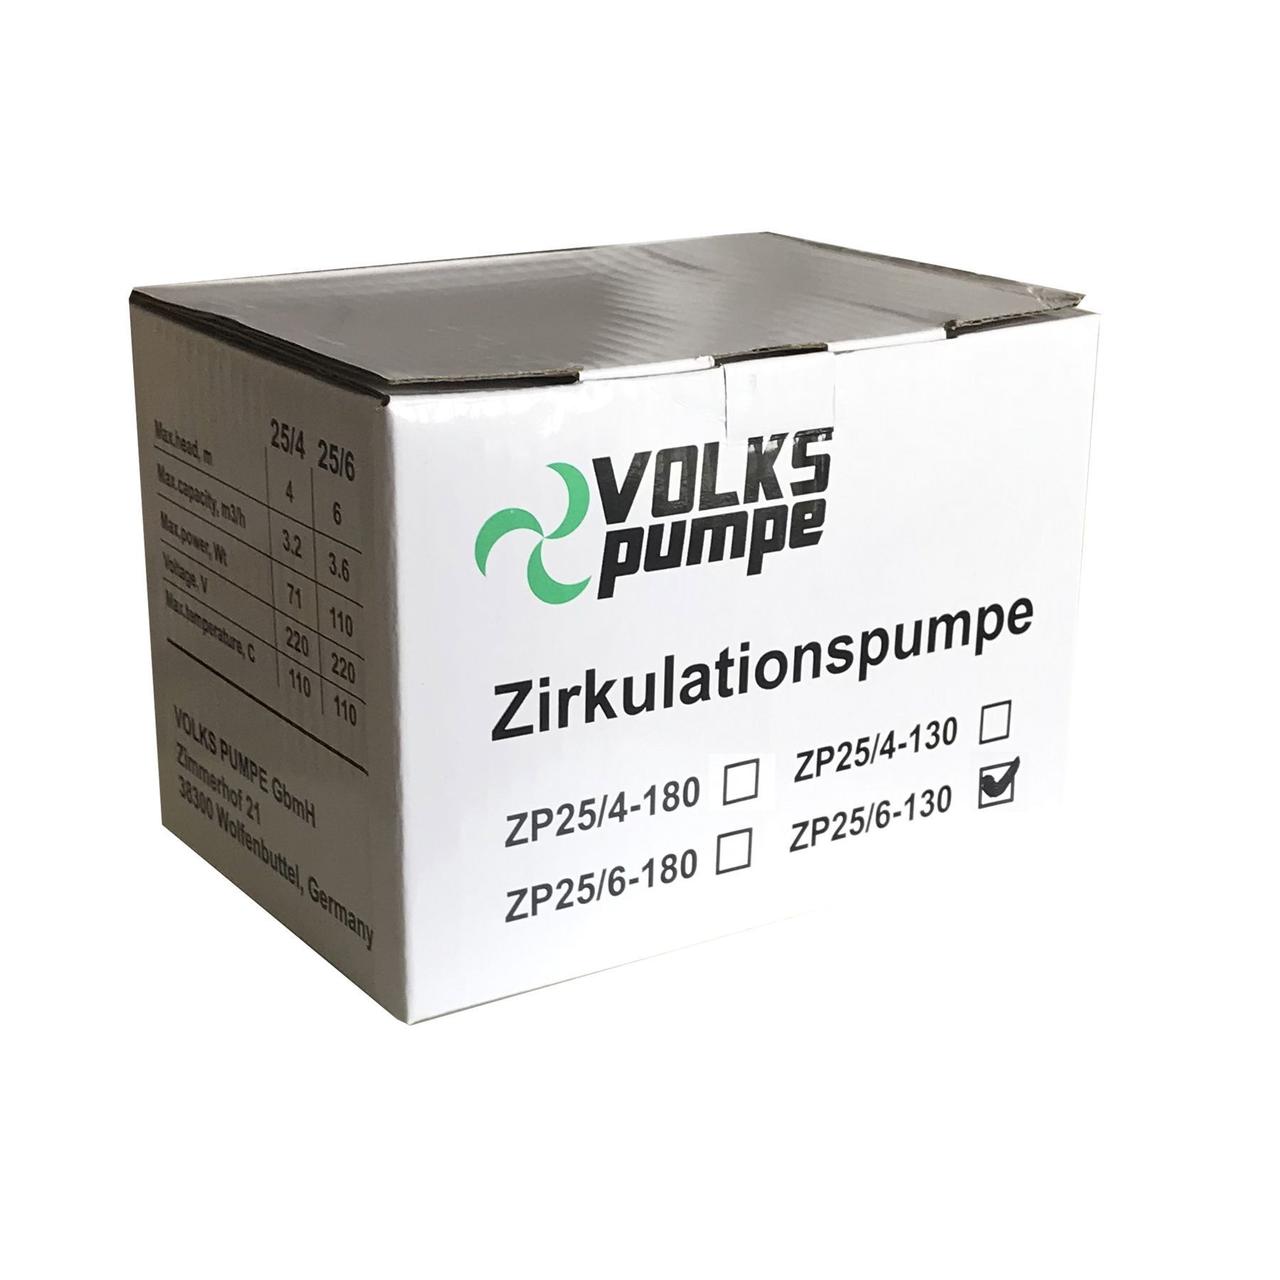 Циркуляционный насос Volks Pumpe ZP25/6 130мм + гайки отзывы - изображения 5